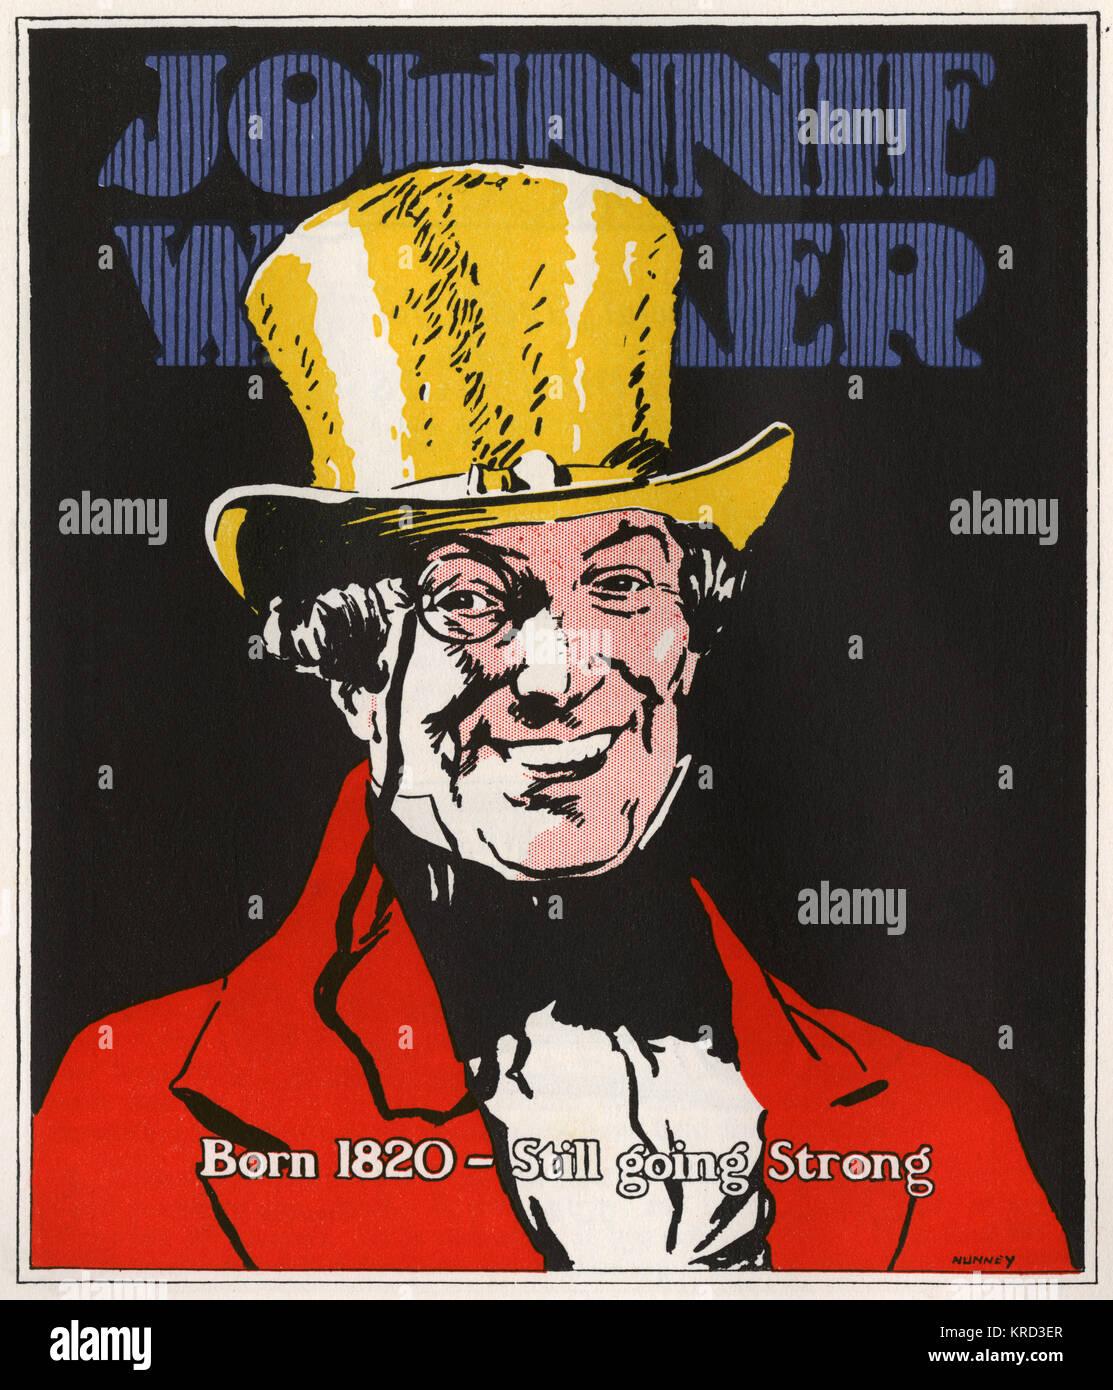 Une publicité pour le whisky Johnnie Walker - toujours aussi bien. Date : 1927 Banque D'Images